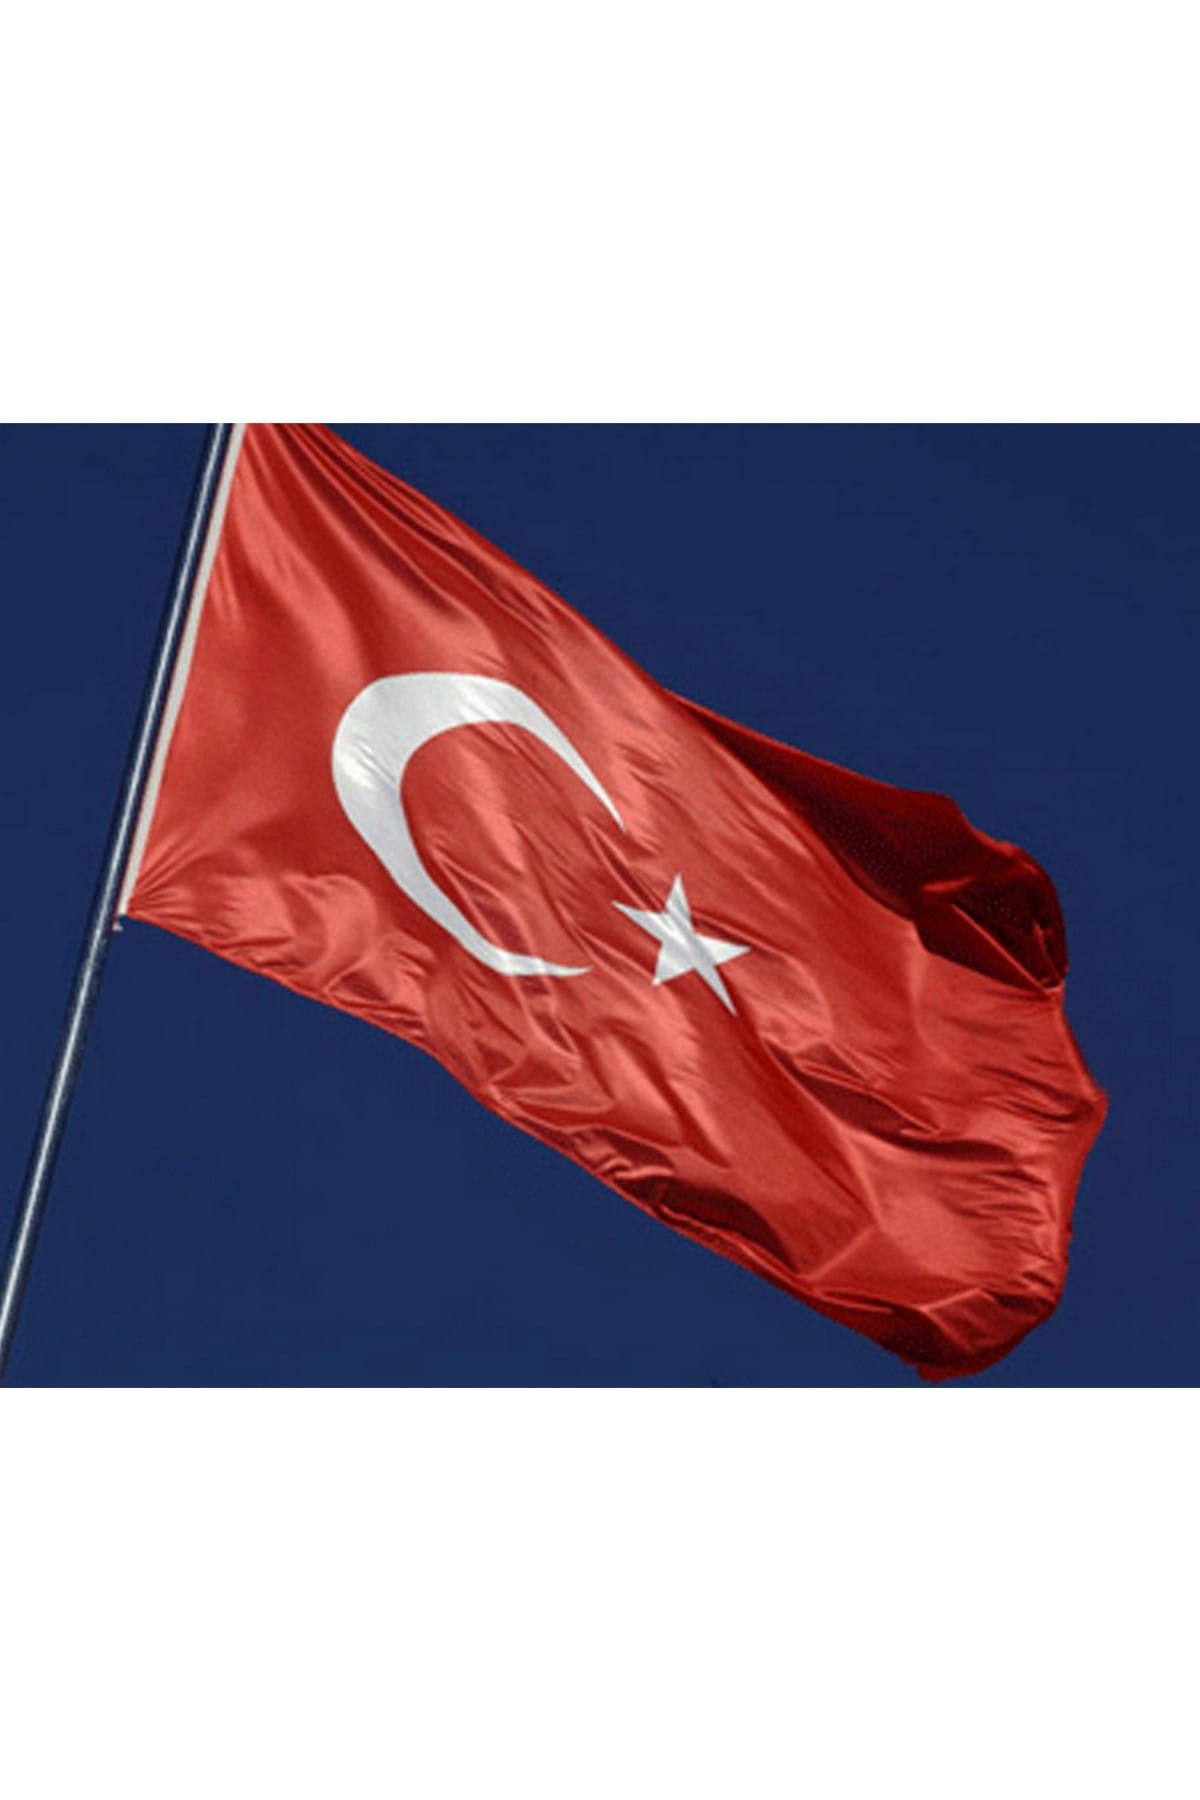 Buket Türk Bayrağı 150x225 cm Özel Raşel Kumaş Bayrak (BKT-125)